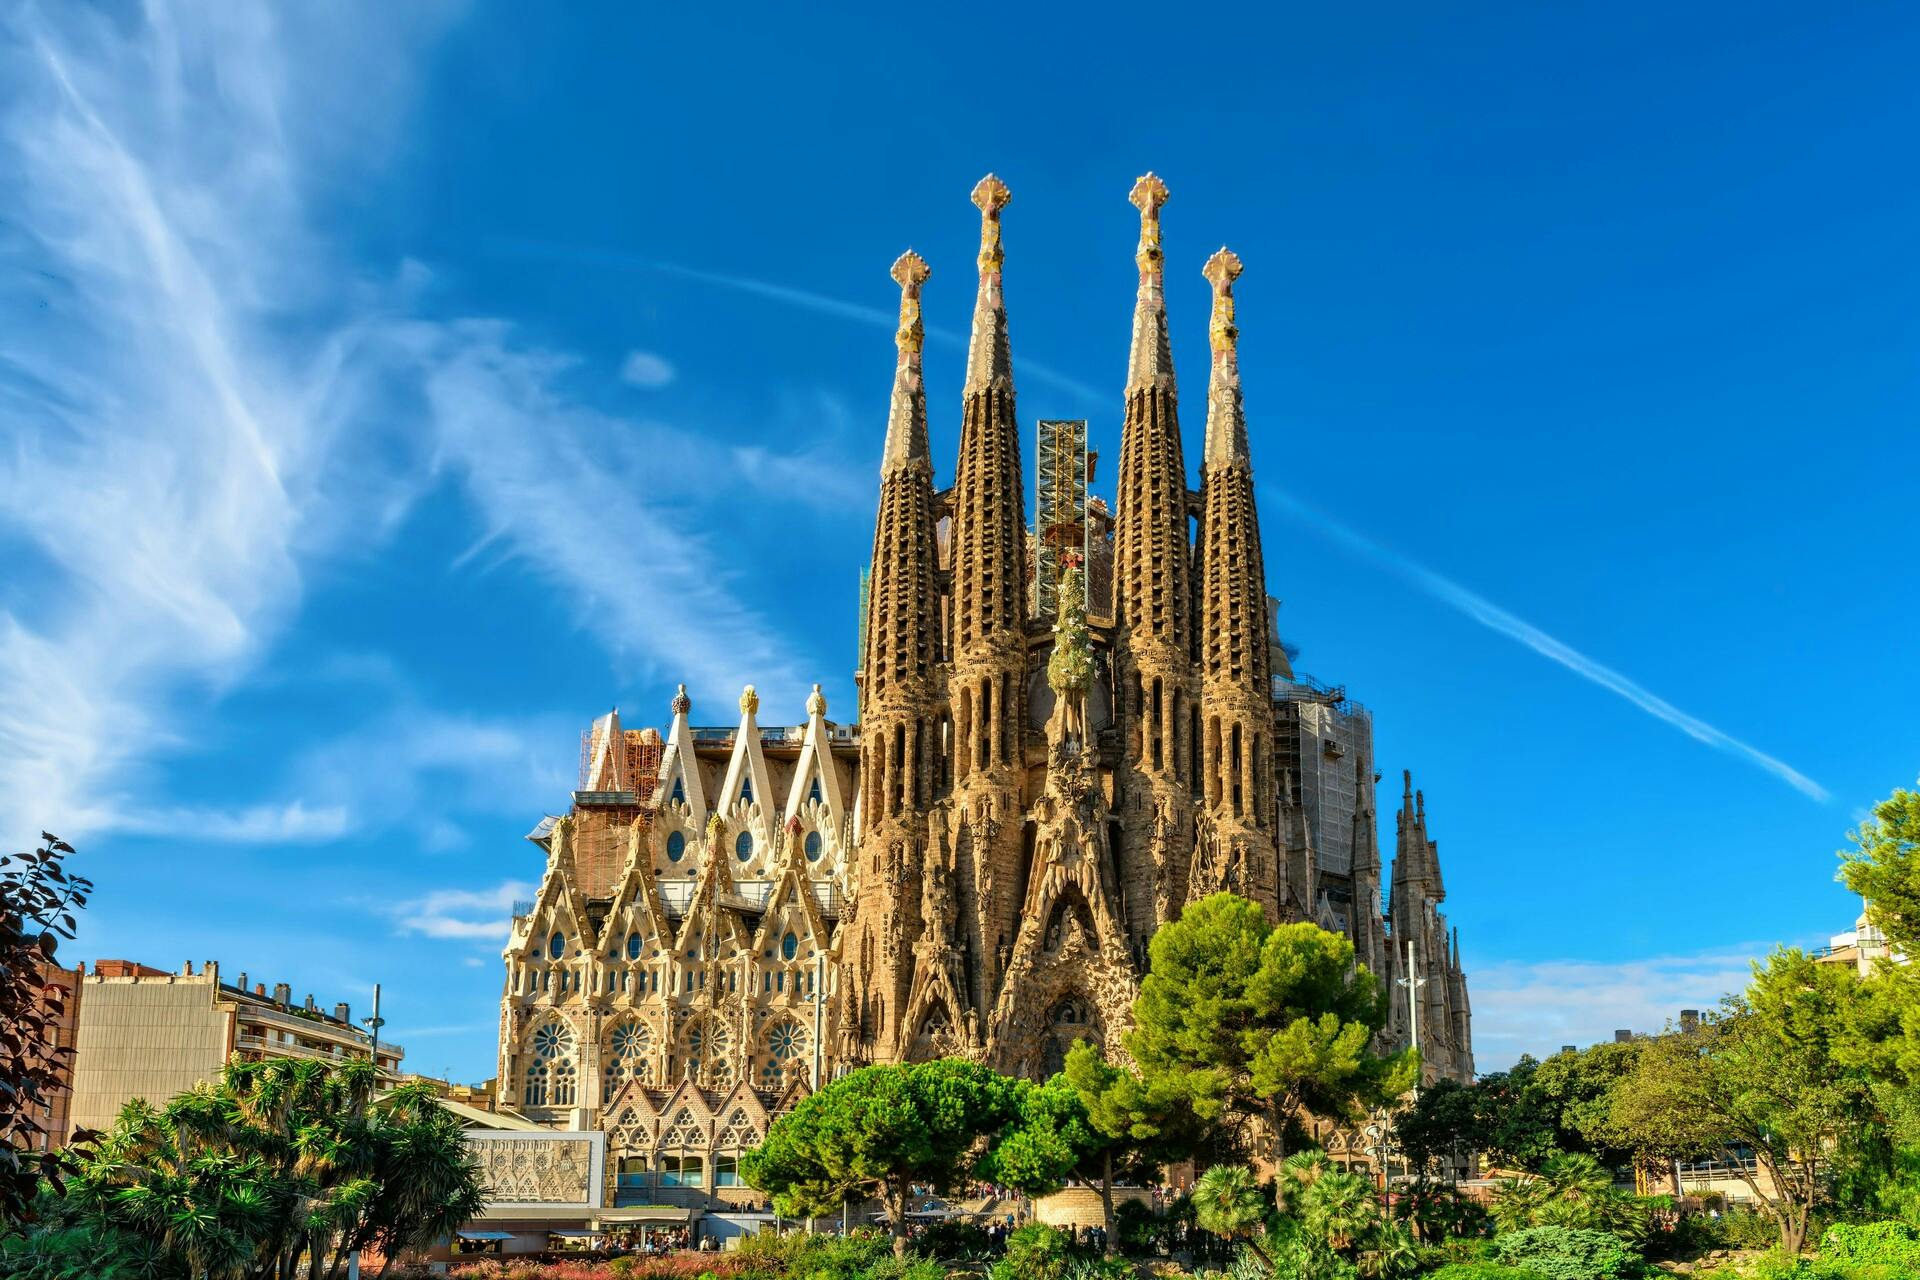 Wycieczka z audioprzewodnikiem po świątyni Sagrada Família